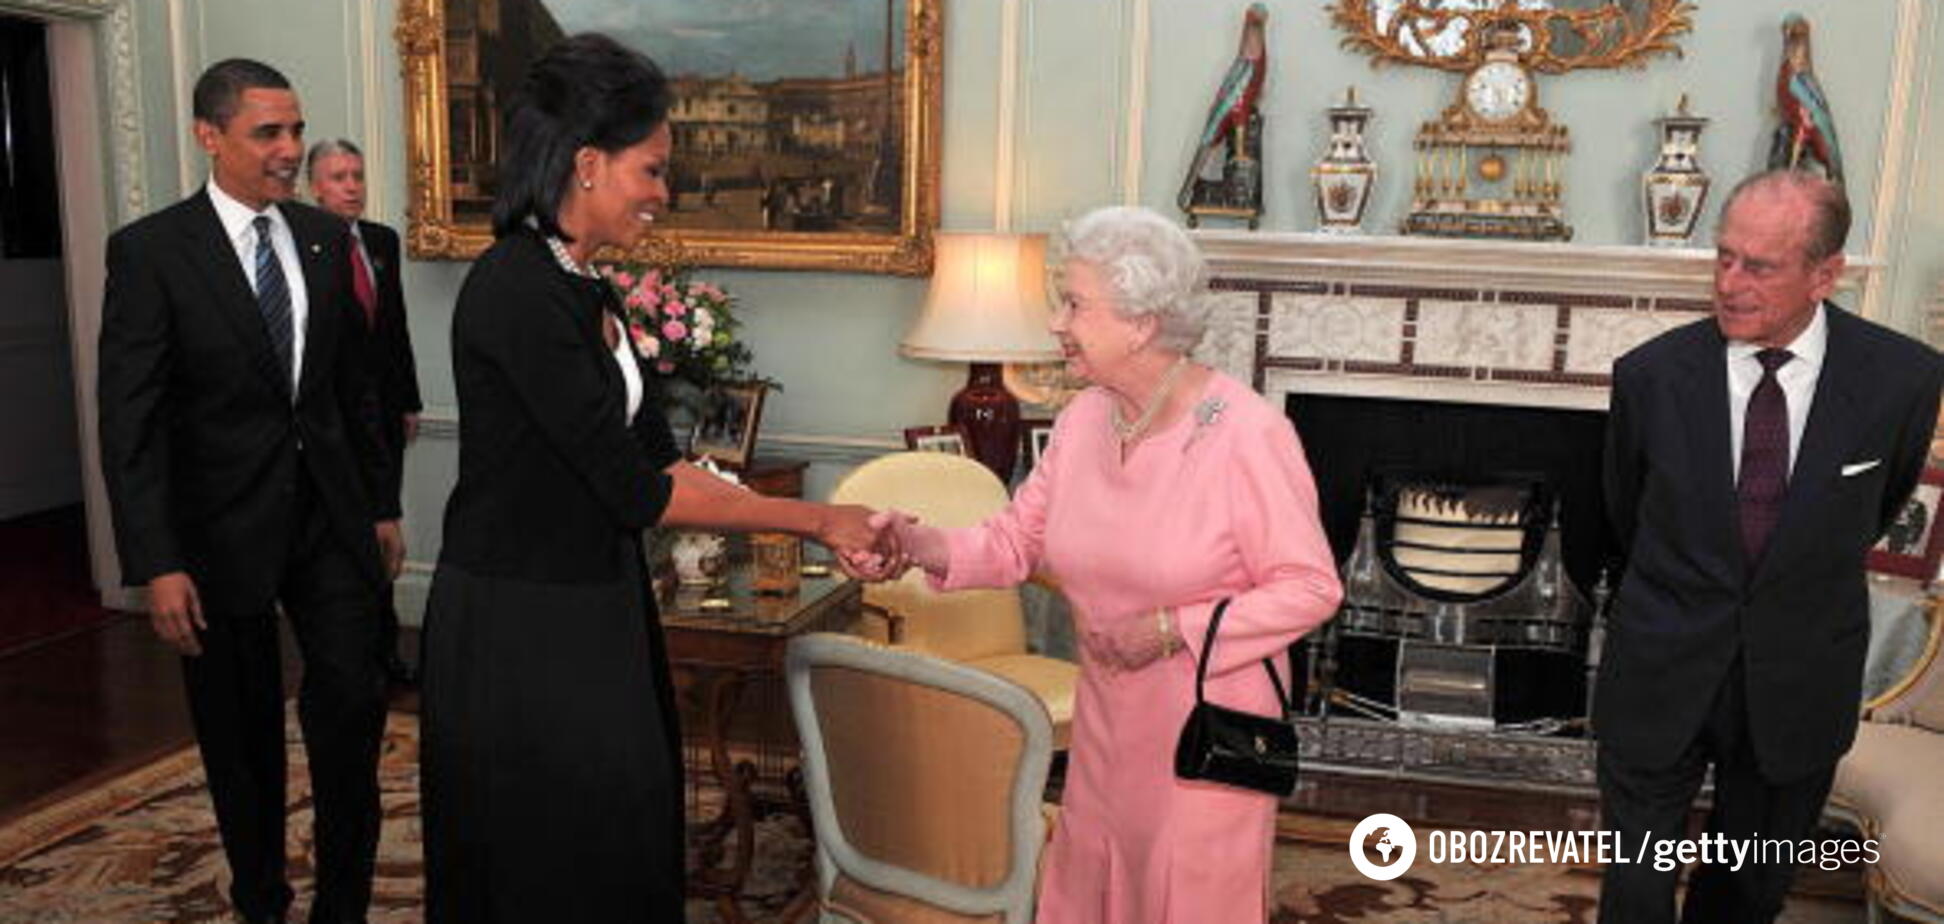 Елизавета II была в восторге: стало известно, какой 'некоролевский' подарок от Барака Обамы очень поразил монархиню